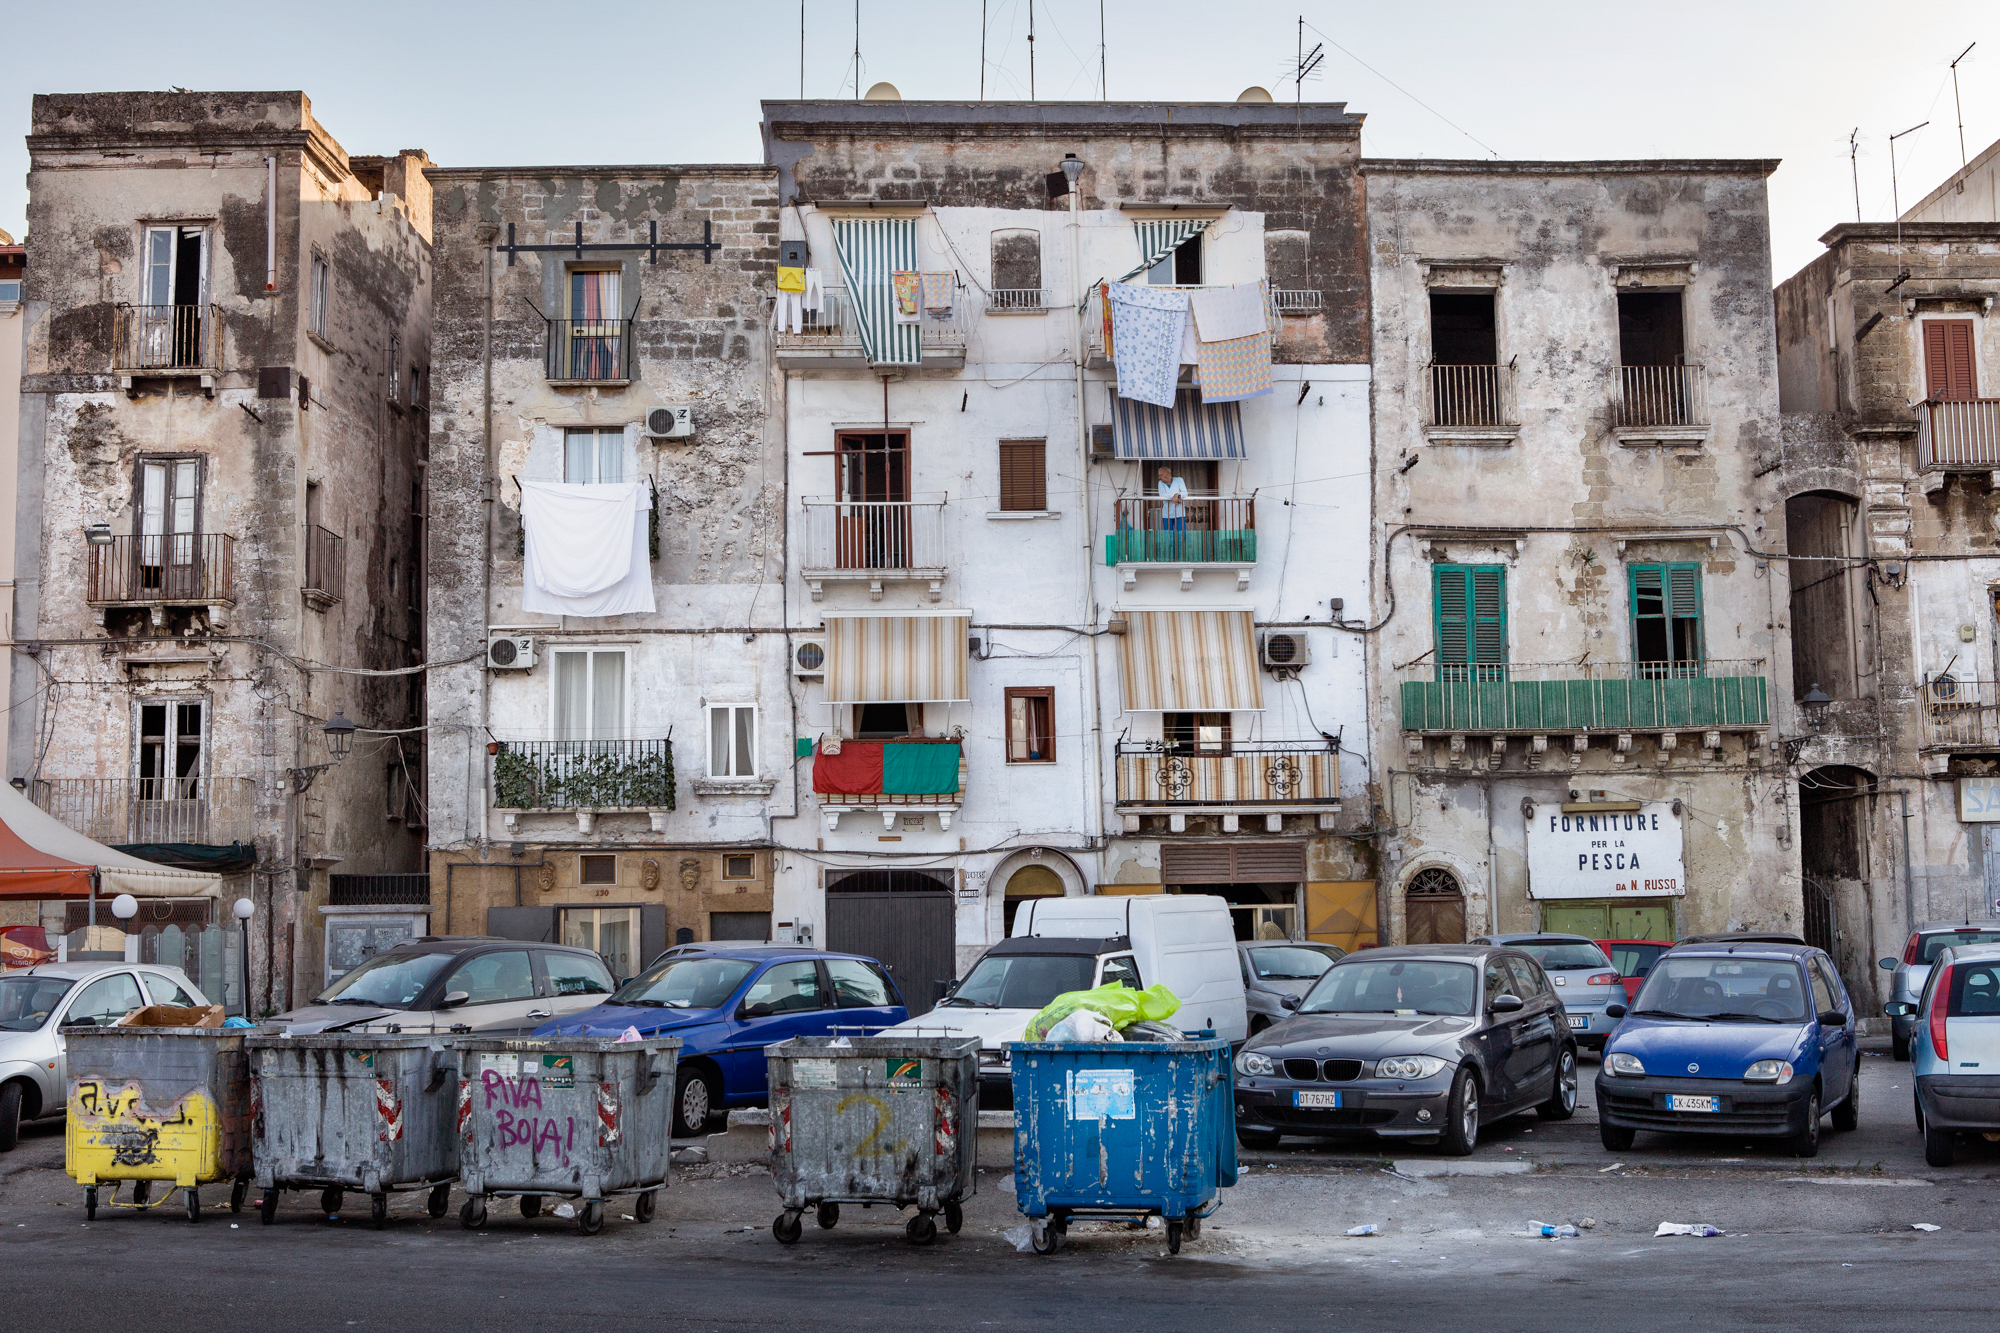  Taranto, Italia, 26 Settembre 2013. Parte bassa della Città Vecchia di Taranto, composta principalmente da case di pescatori. Nel 2011, l’amministrazione tarantina aveva attivato la procedura per far riconoscere la Città Vecchia come Patrimonio dell